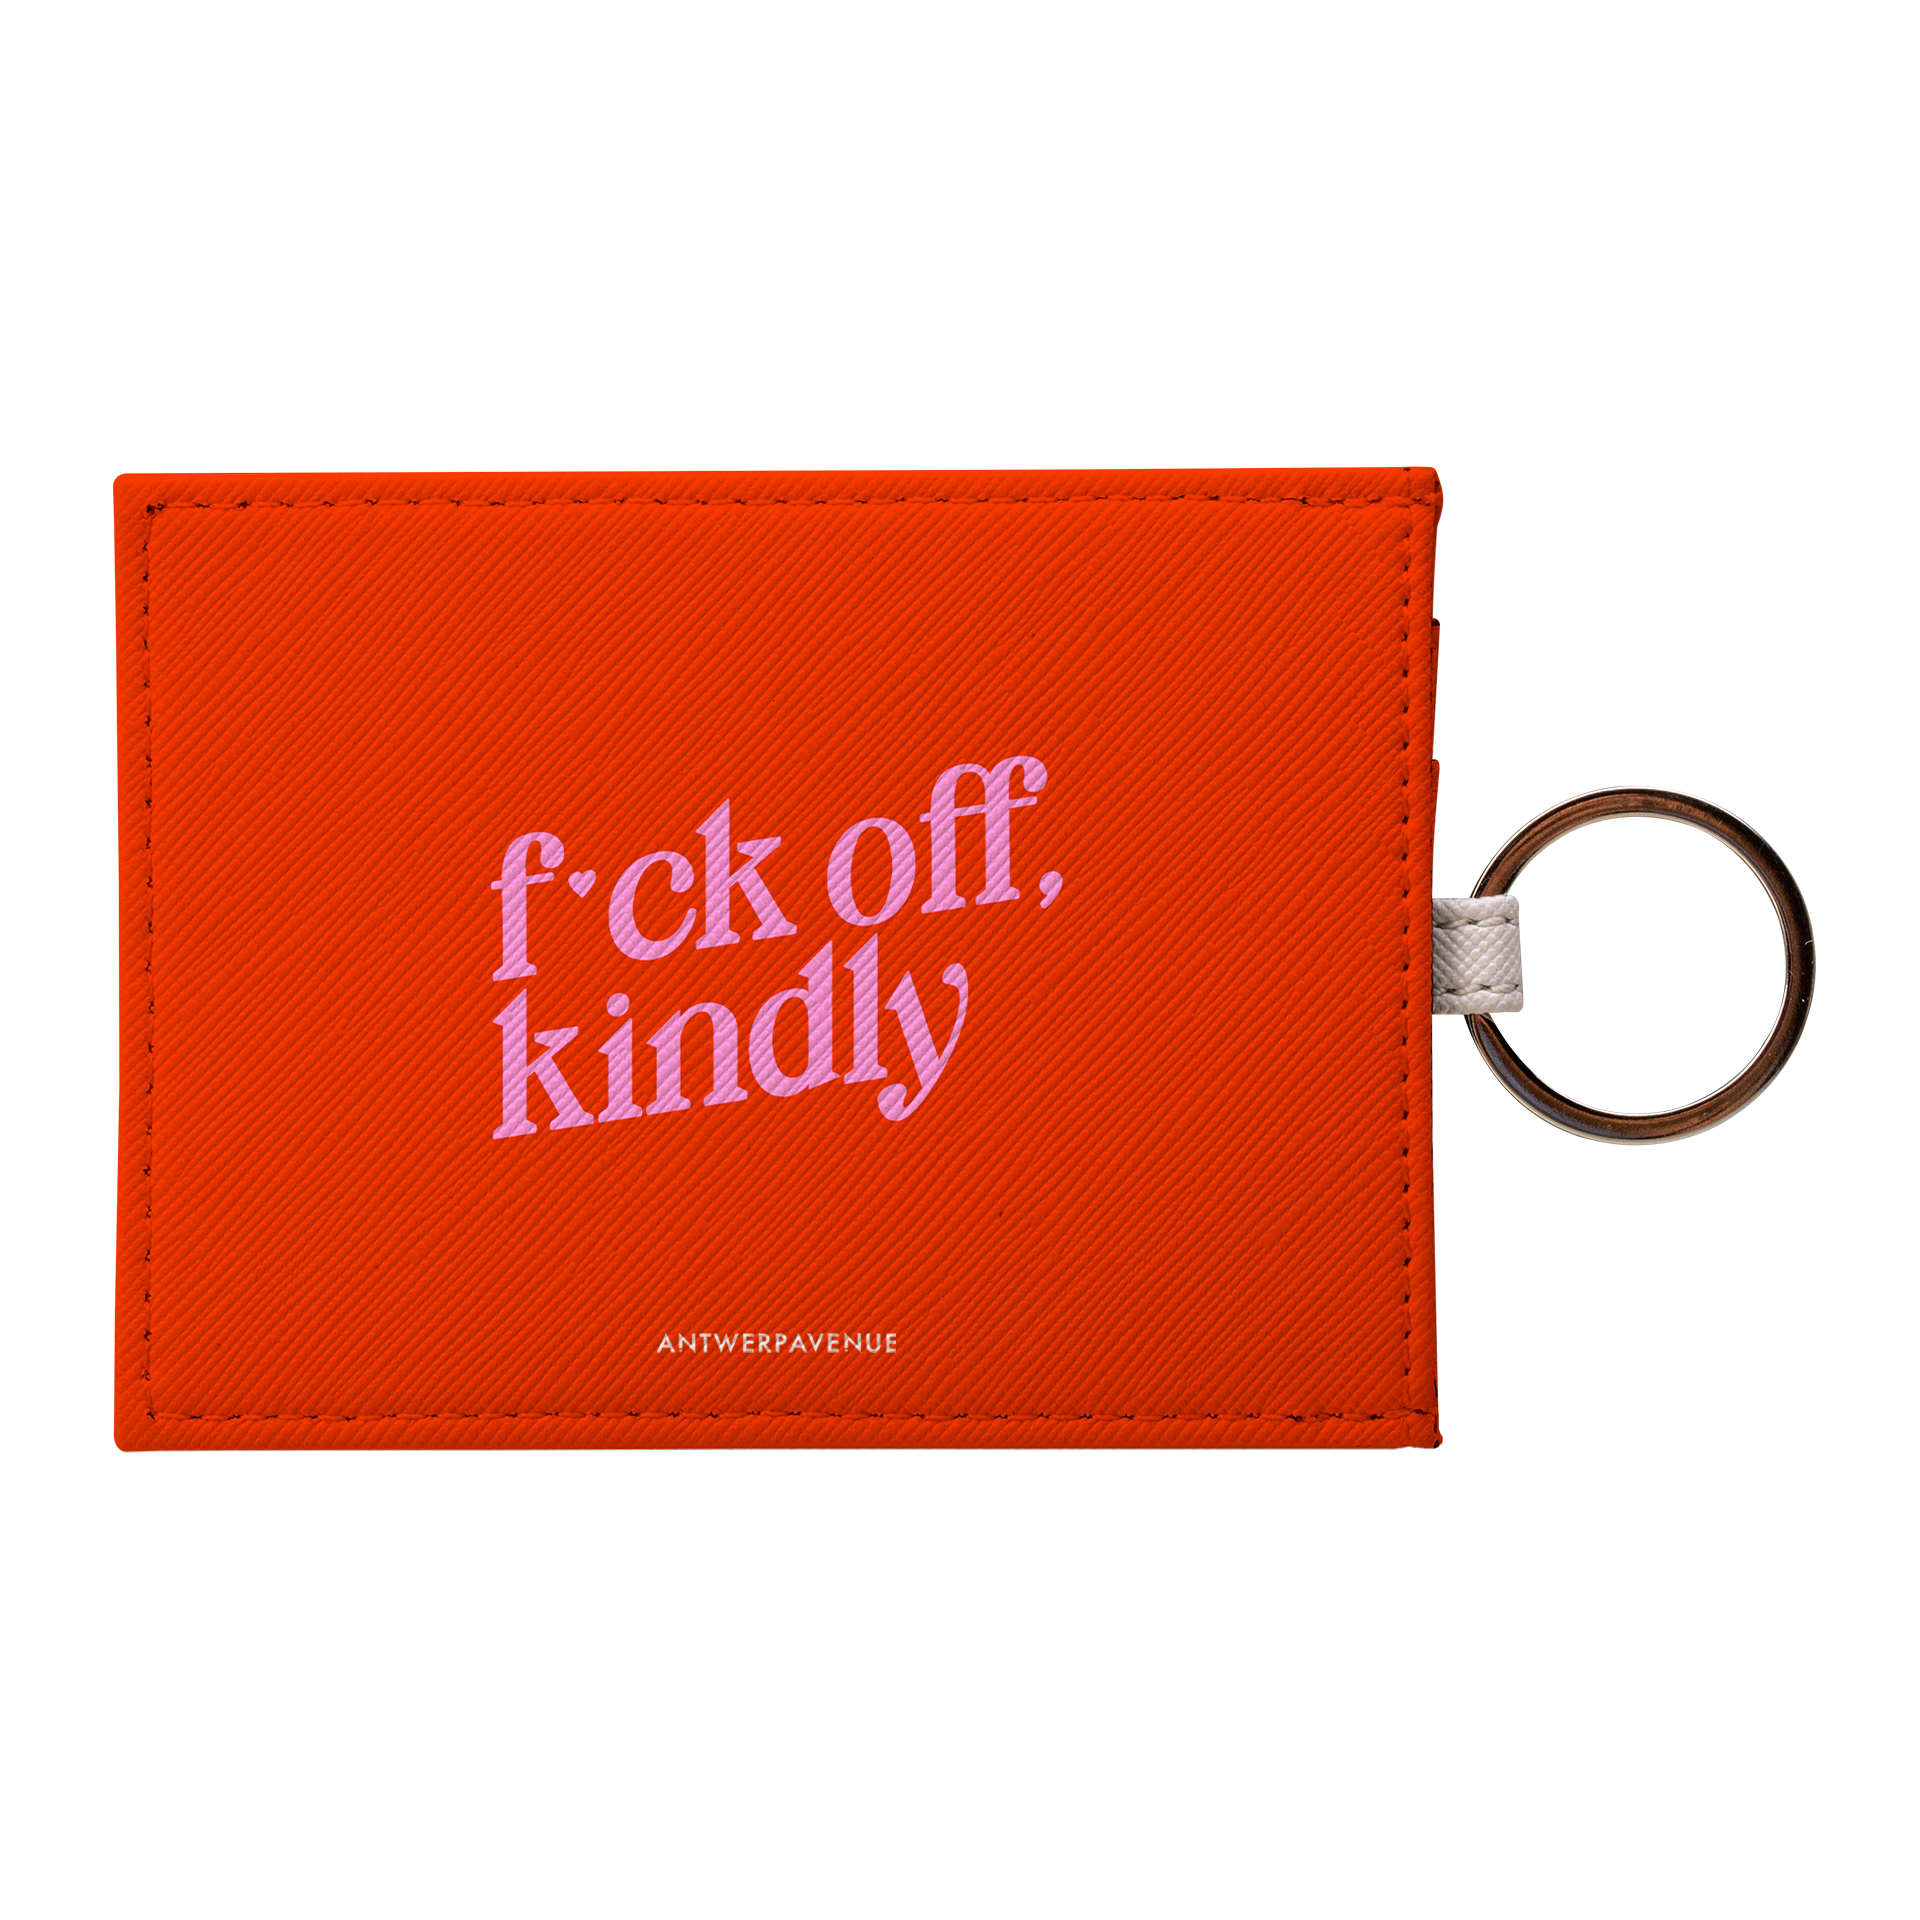 Fck Off, Kindly - Card Holder